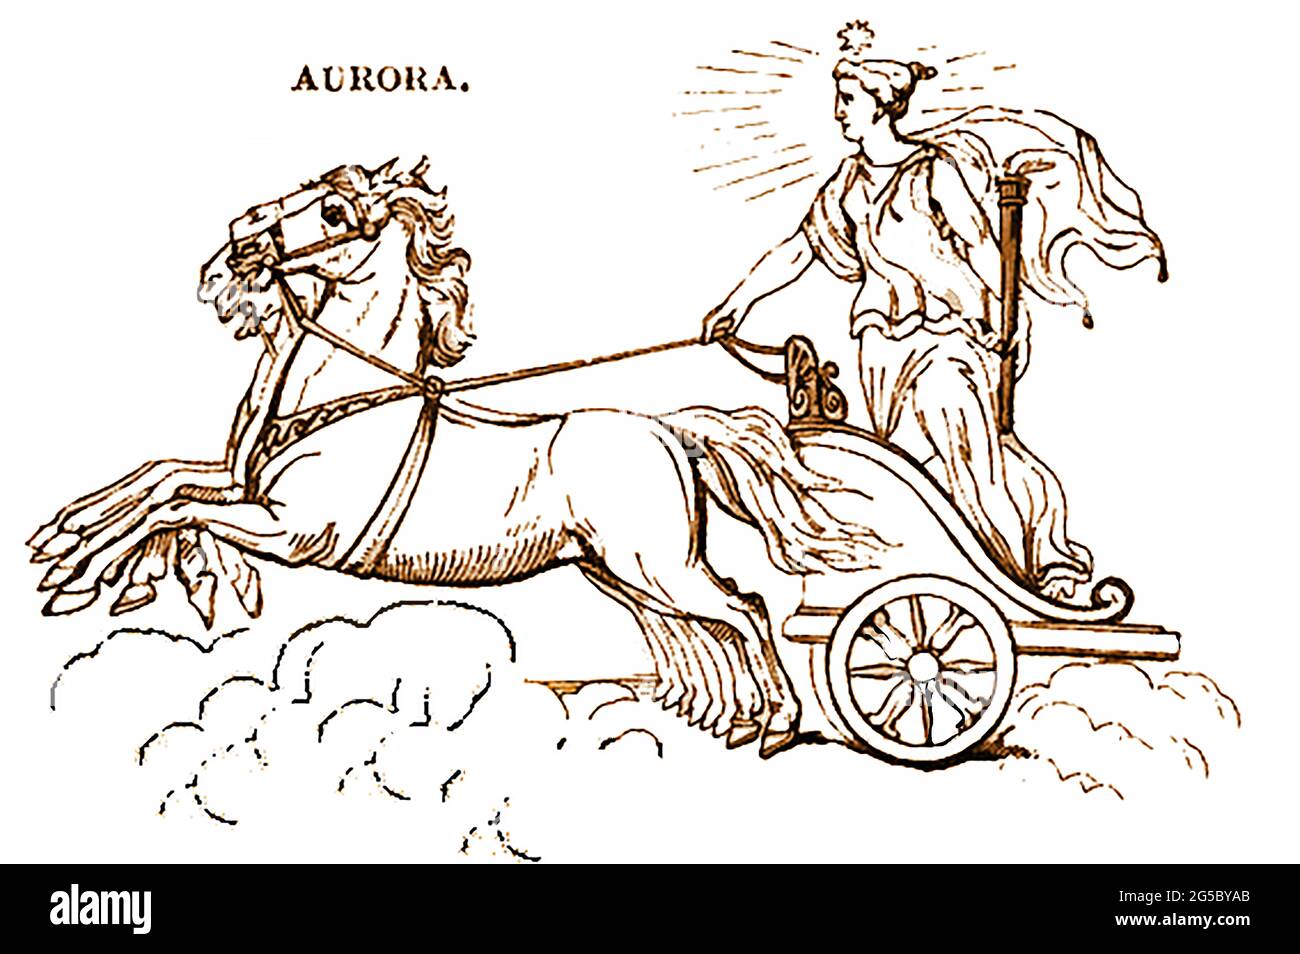 Una representación en 1839 de la figura mitológica Aurora la diosa del amanecer en la mitología griega y romana . Ella ha evolucionado del nombre de una diosa indoeuropea del amanecer anterior, Hausos. En la poesía griega, Aurōra era la madre de los Anemoi (Los Vientos), y la descendencia de Astraeus, el padre de las estrellas. Foto de stock